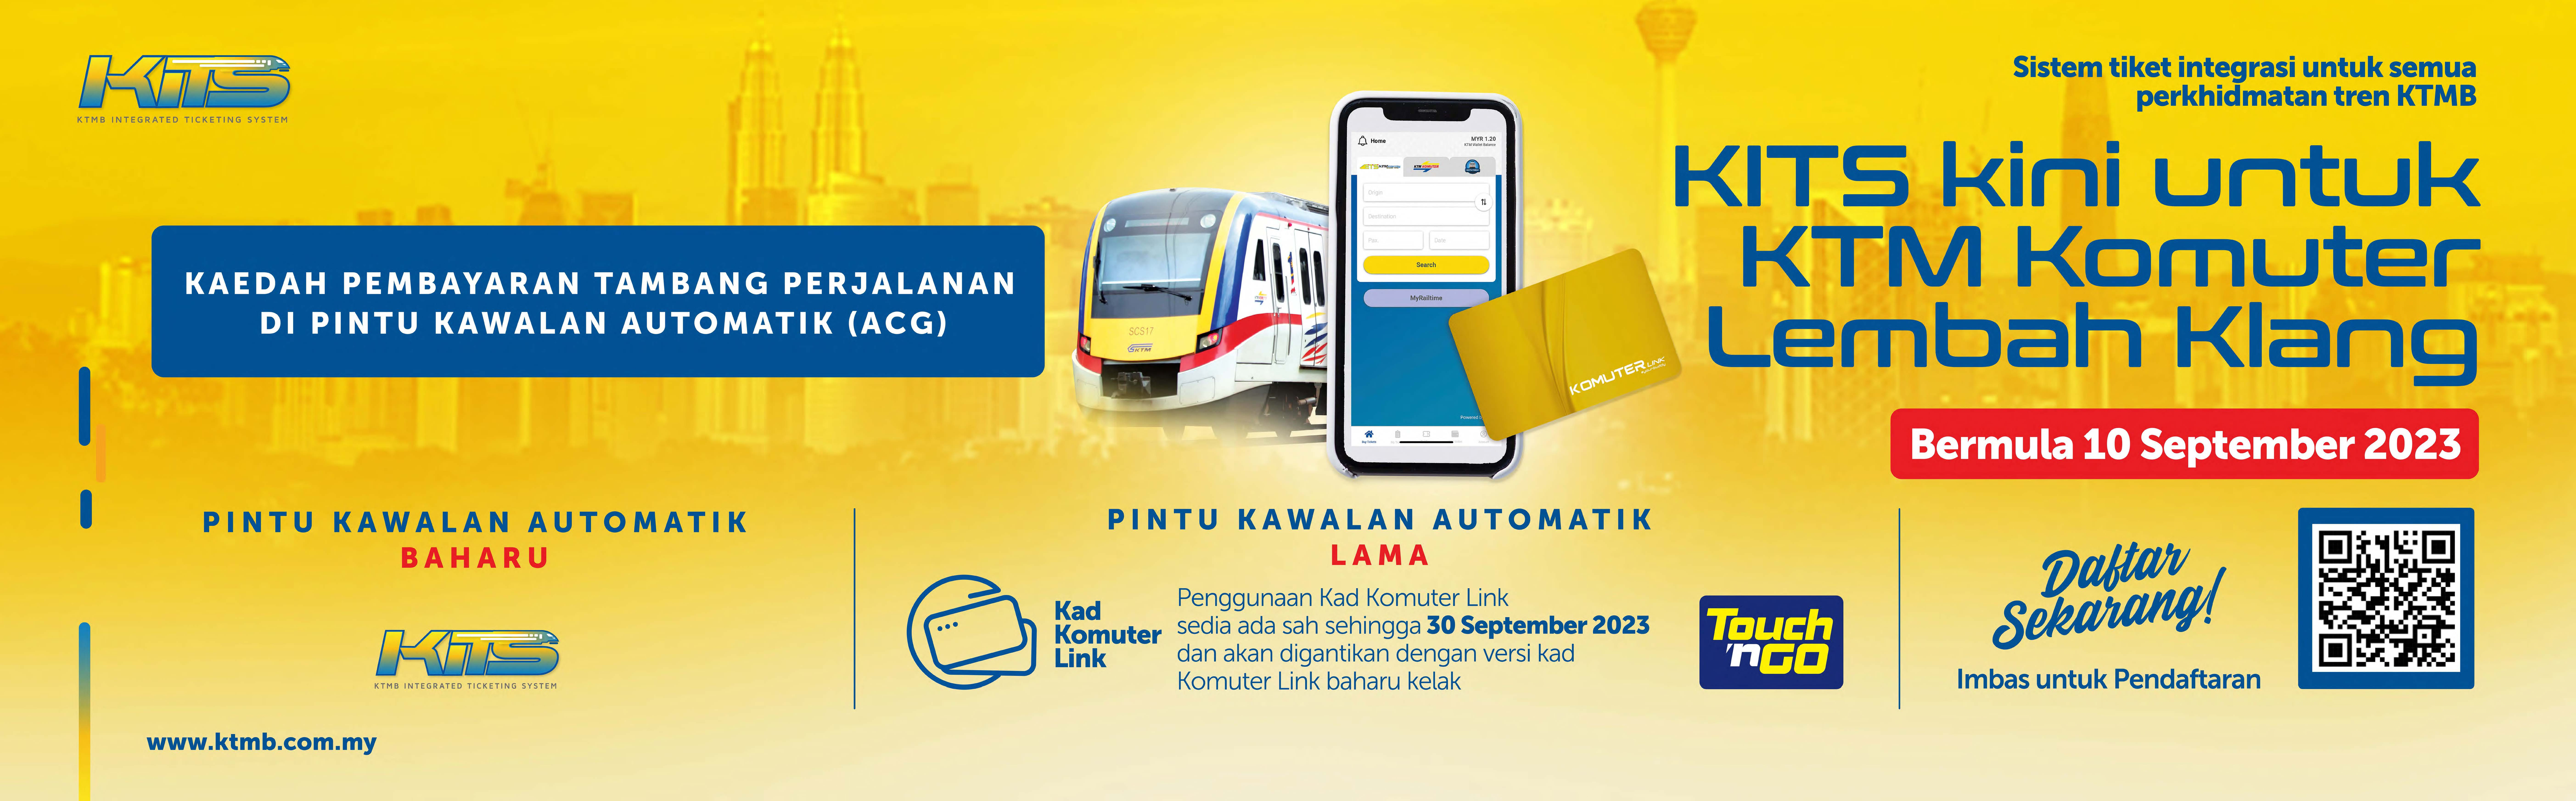 KITS Kini Untuk Komuter Lembah Klang, Bermula 10 September 2023